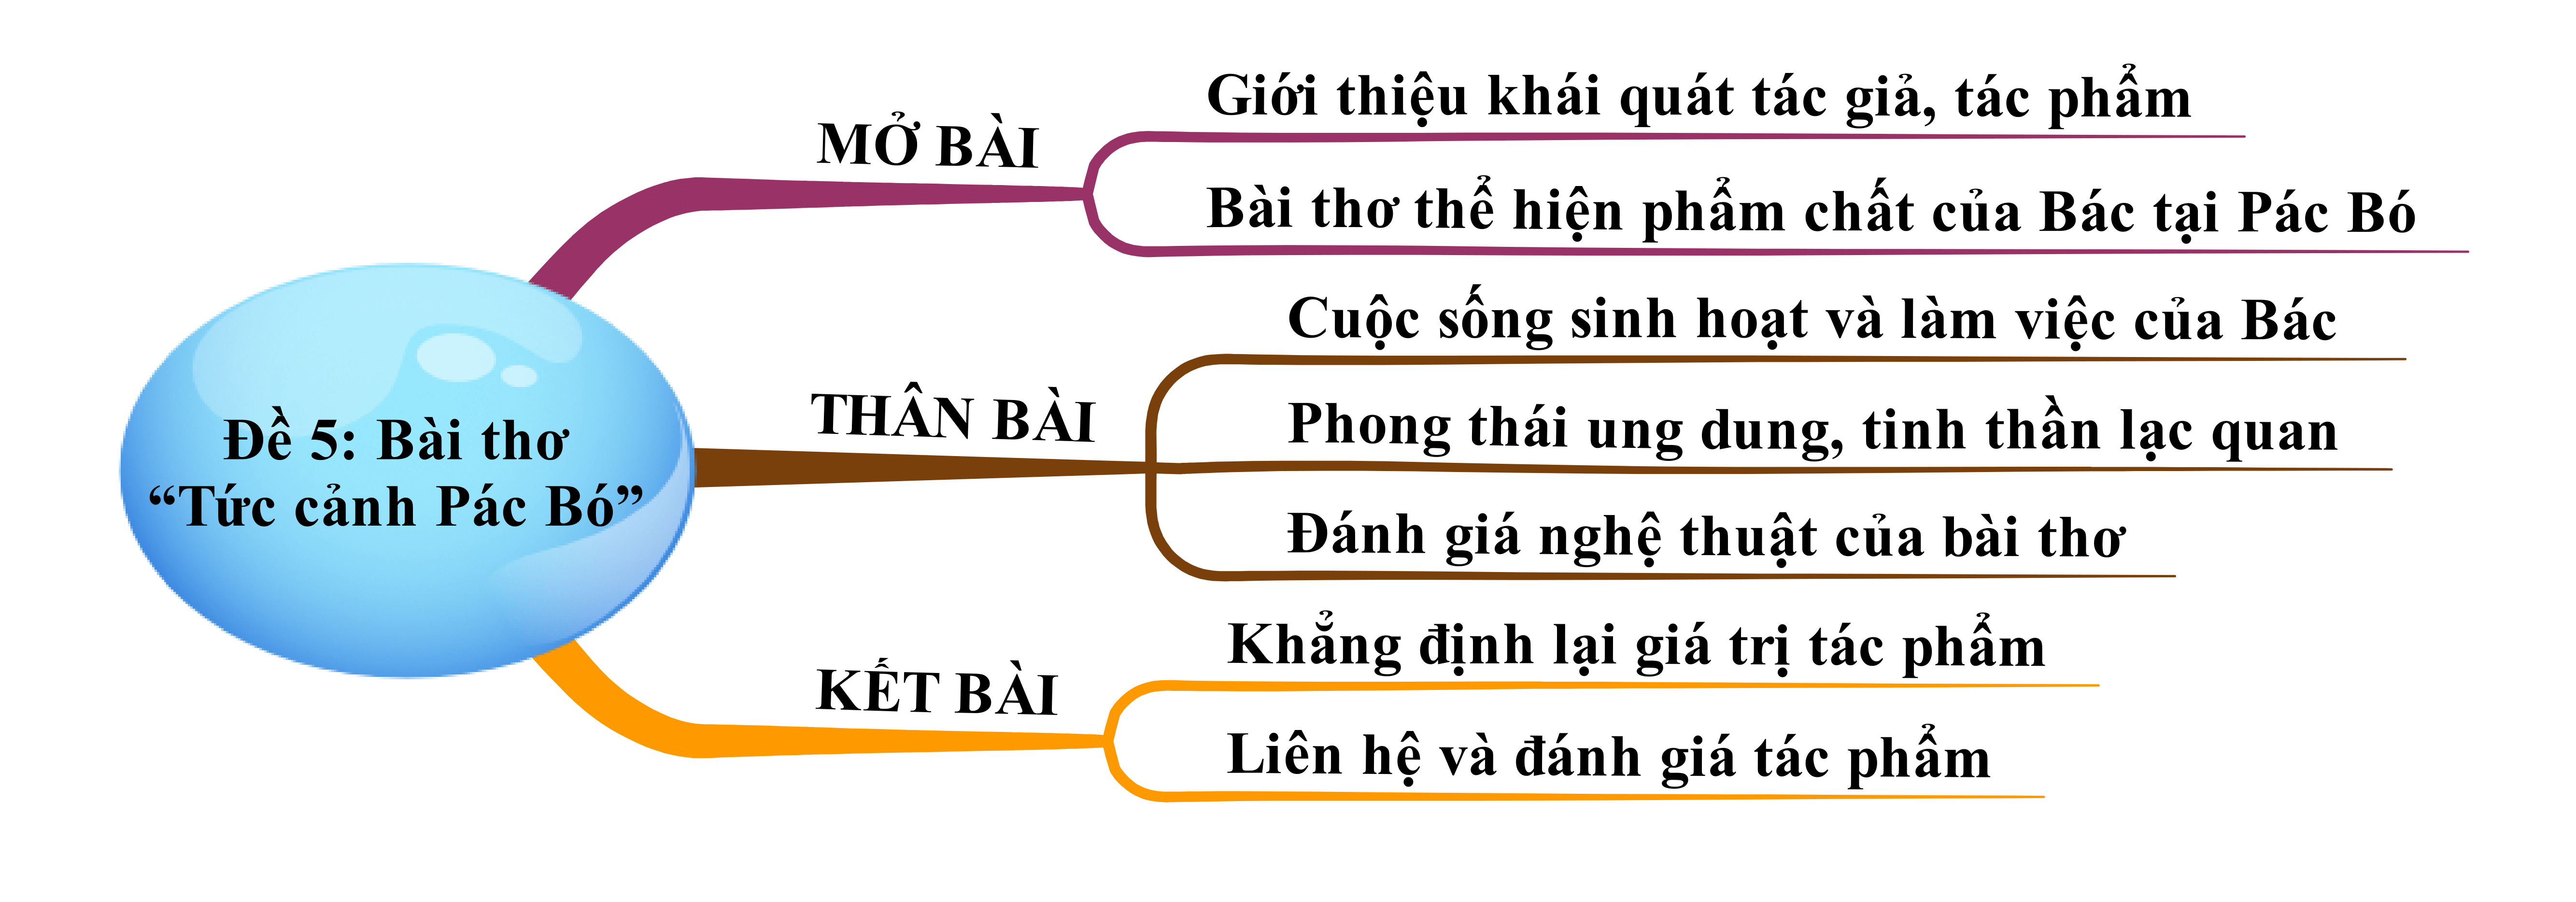 Bài thơ Tức cảnh Pác Bó của Hồ Chí Minh năm 2023